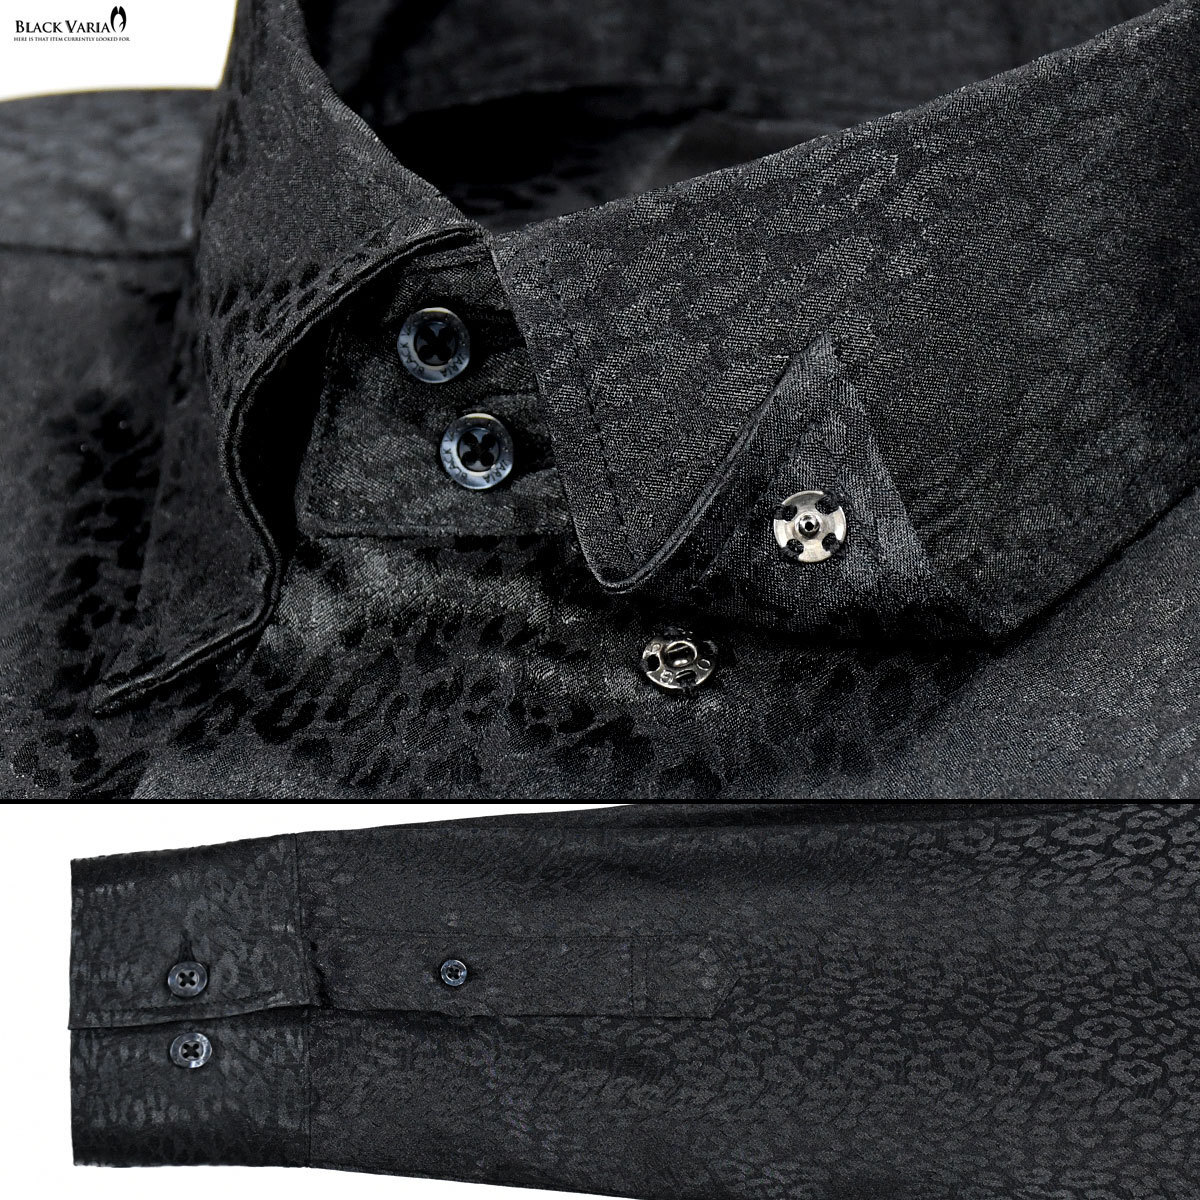 181710-bk BLACK VARIA ドゥエボットーニ ヒョウ柄 豹 ジャガード スナップダウン ドレスシャツ 日本製 メンズ(ブラック黒) M パーティー_画像5